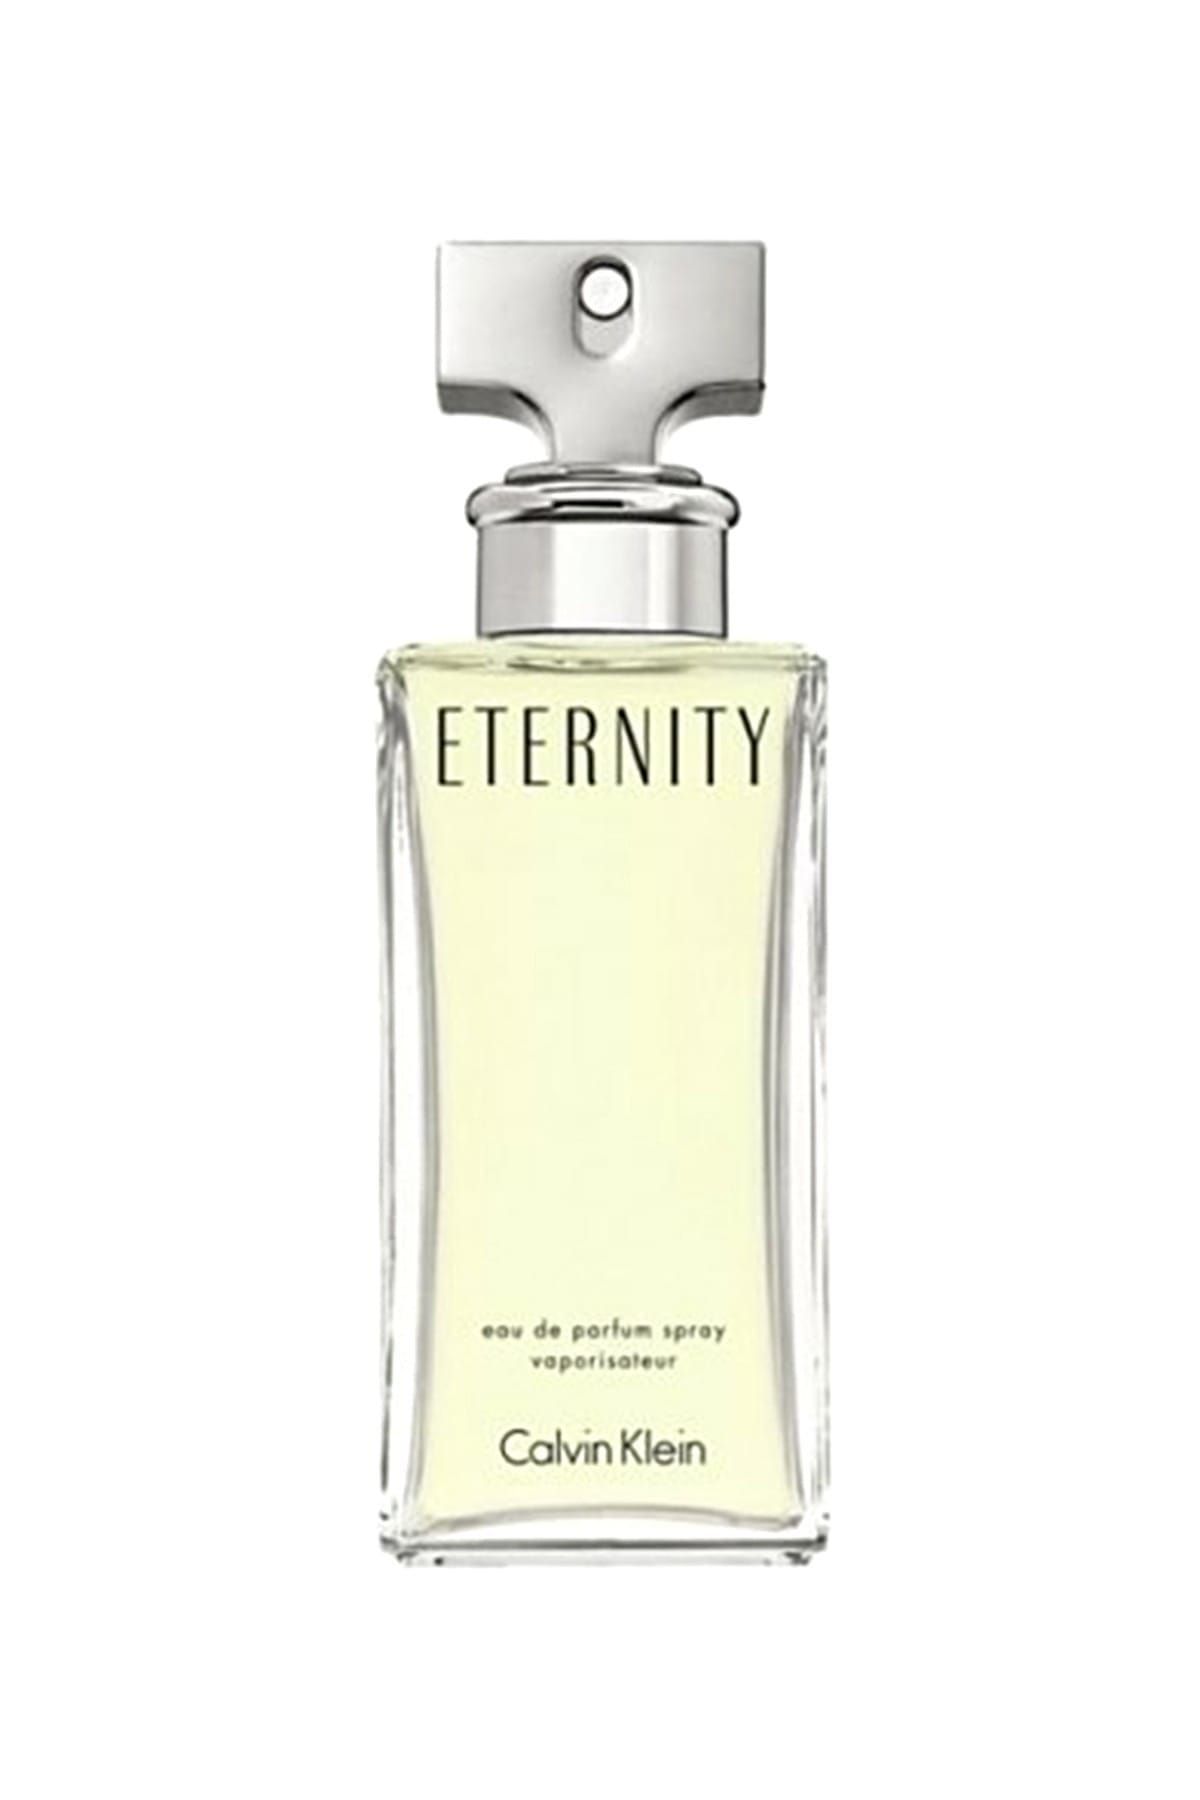 Calvin Klein Eternity ادوپرفیوم 100 ml عطر زنانه